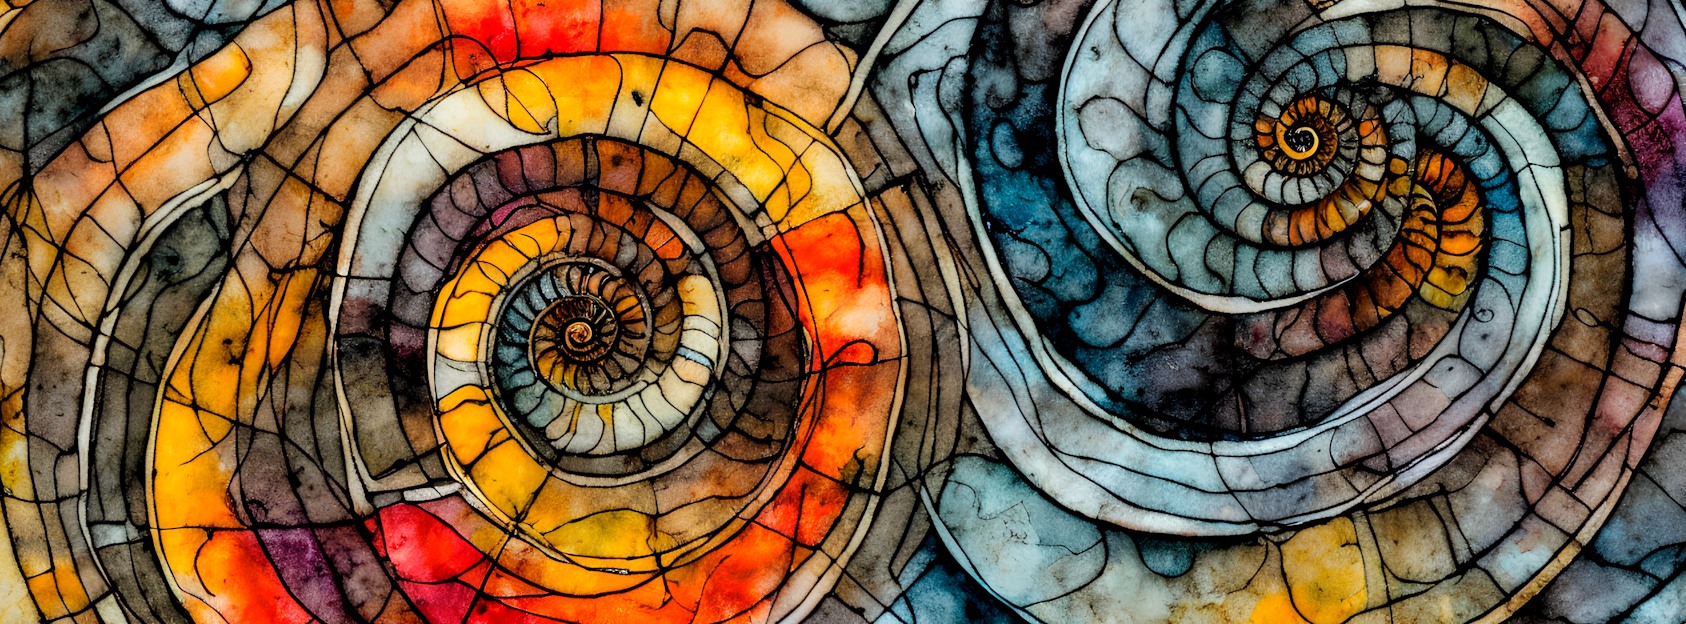 Et abstrakt bilde med varme og kalde farger inspirert av amonitter